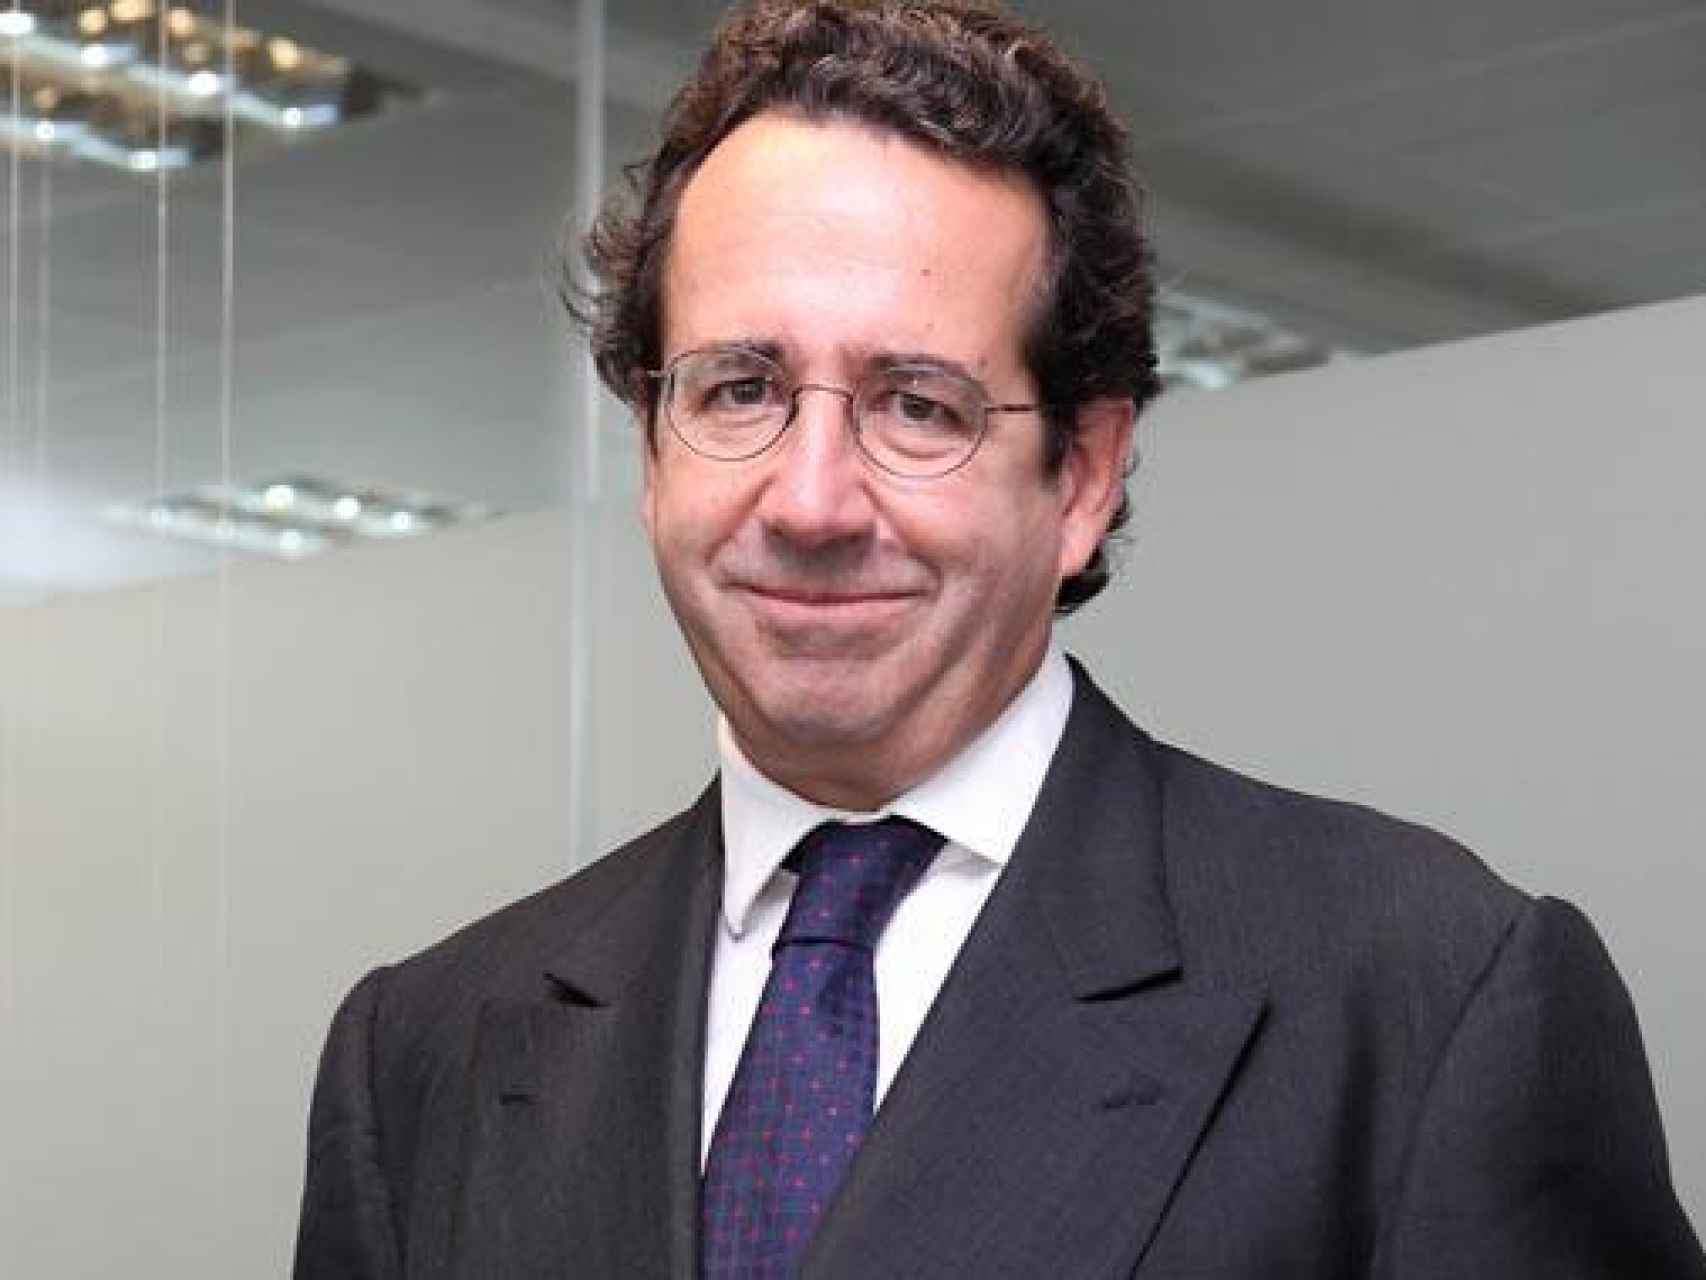 Alfonso Rodés, CEO de Havas Media en España, en una imagen de archivo.